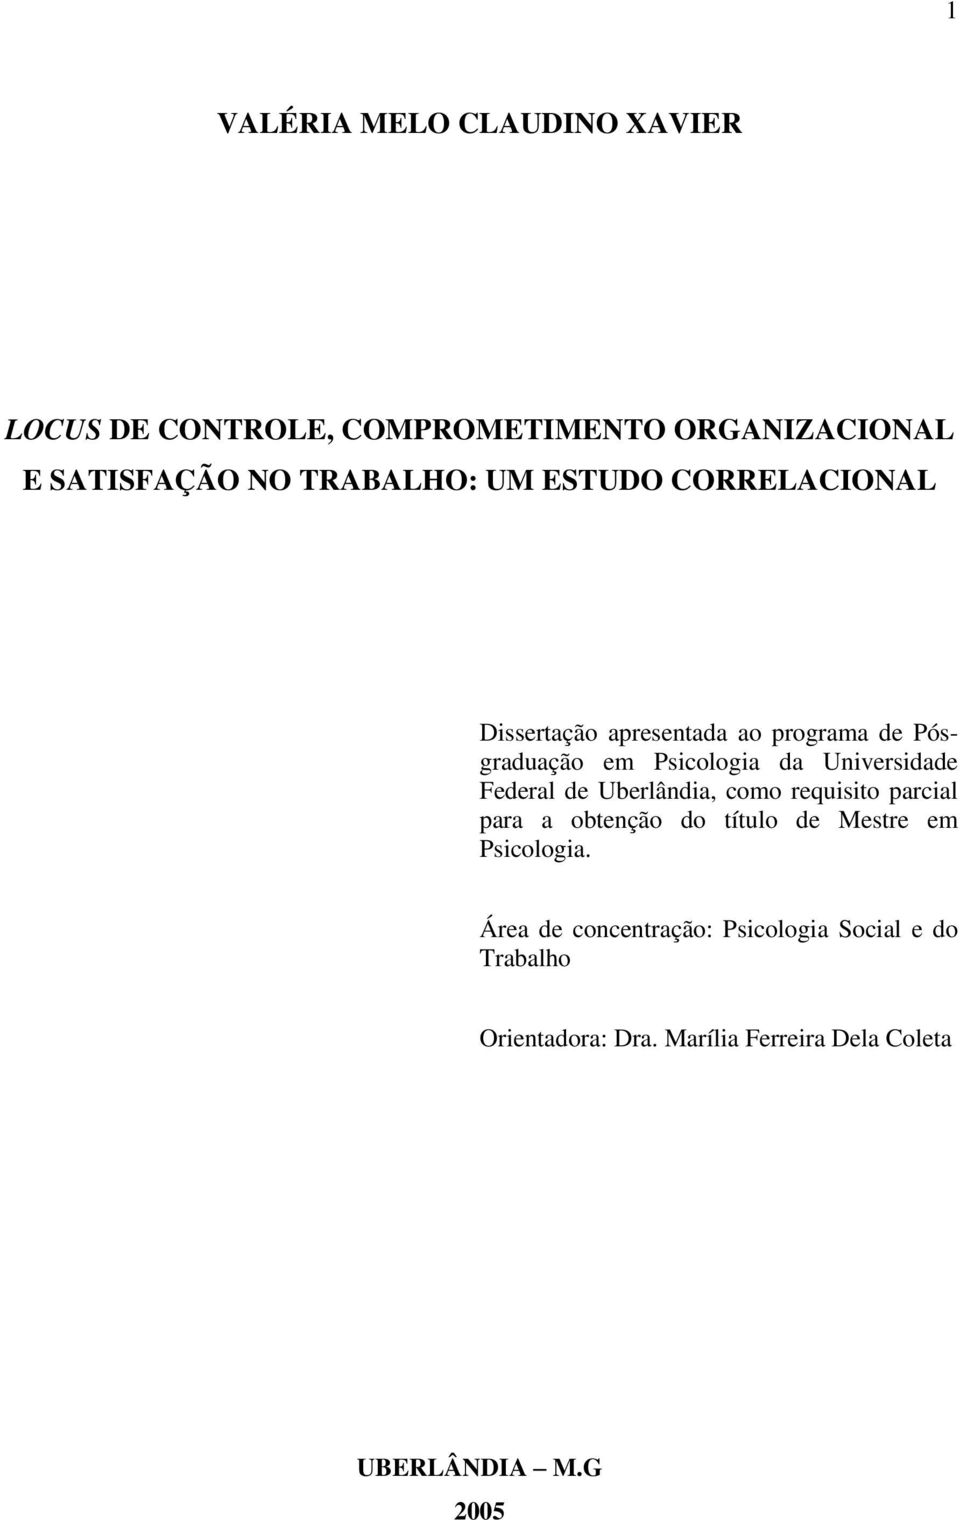 Federal de Uberlândia, como requisito parcial para a obtenção do título de Mestre em Psicologia.